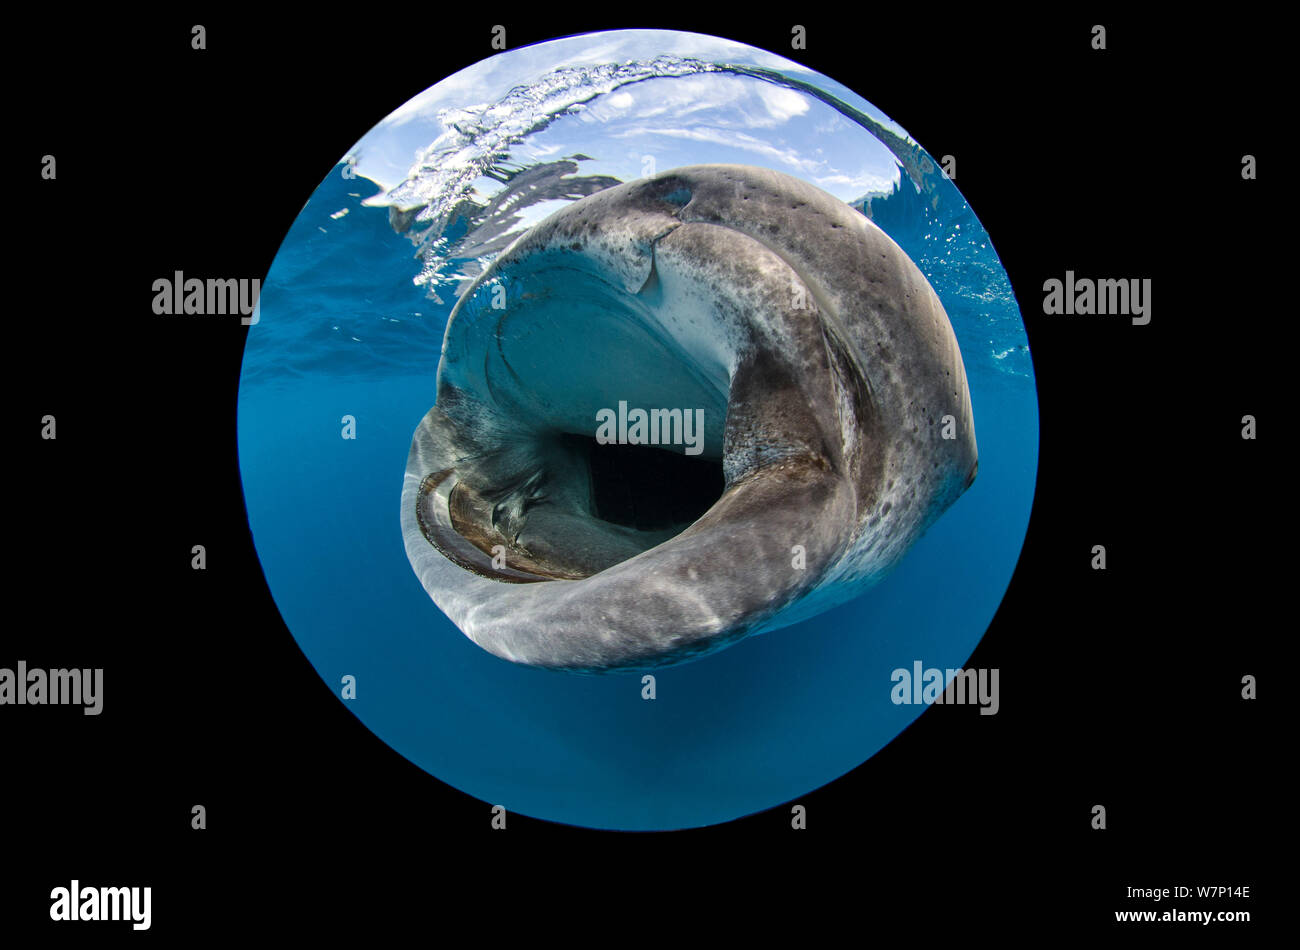 Un extreme close up utilizzando circolare lente fisheye della bocca di uno squalo balena (Rhincodon typus) come si nutre di uova di pesce in superficie, Isla Mujeres, Quintana Roo, la penisola dello Yucatan, Messico, Mar dei Caraibi. Foto Stock